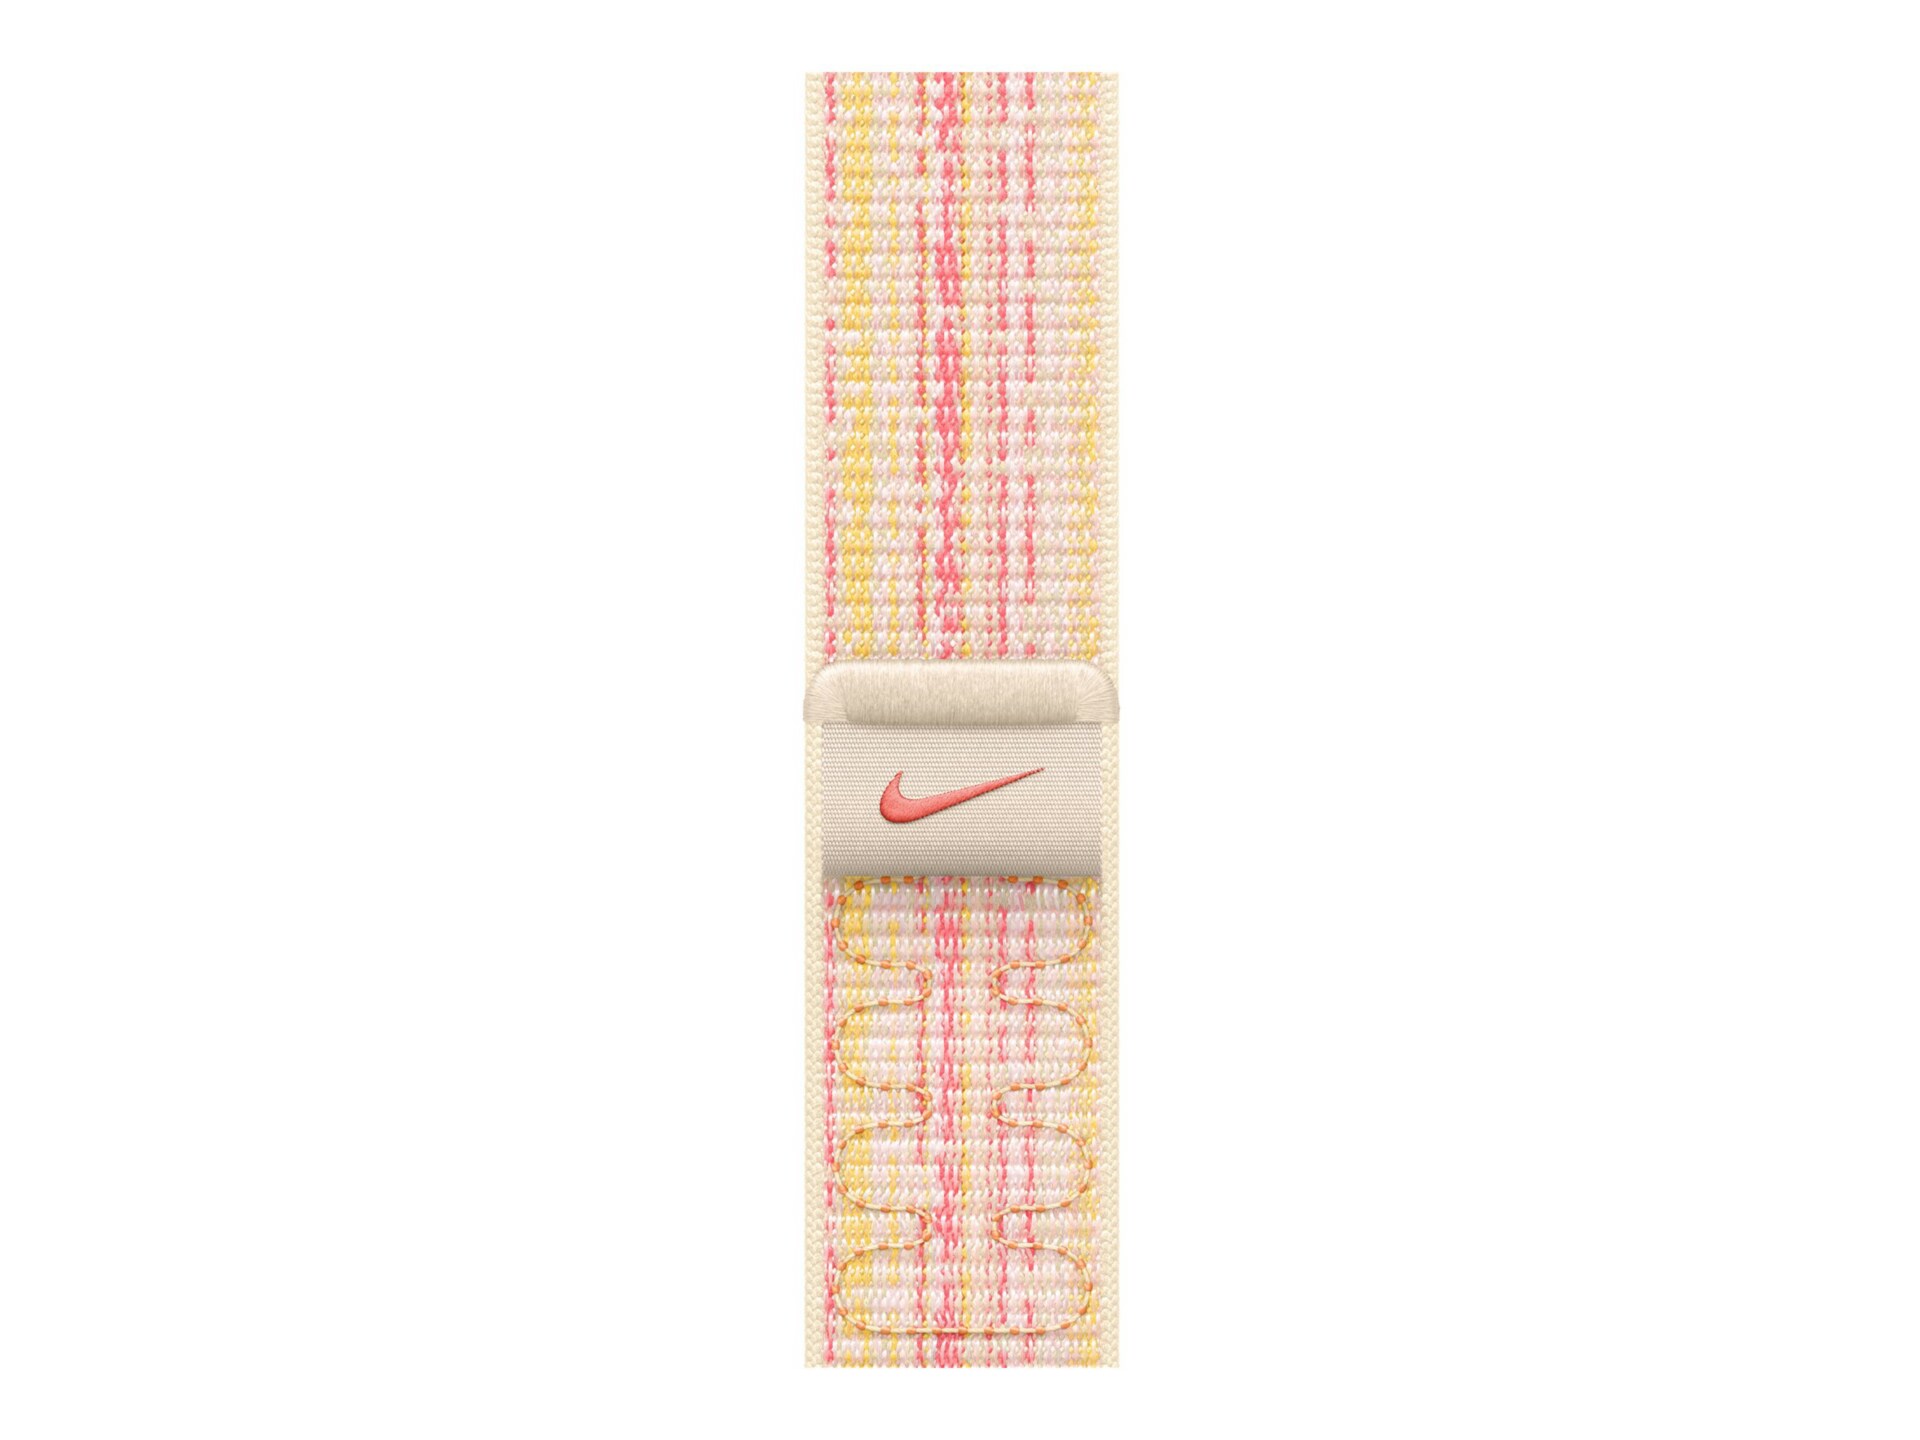 Apple Nike - boucle pour montre intelligente - 45 mm